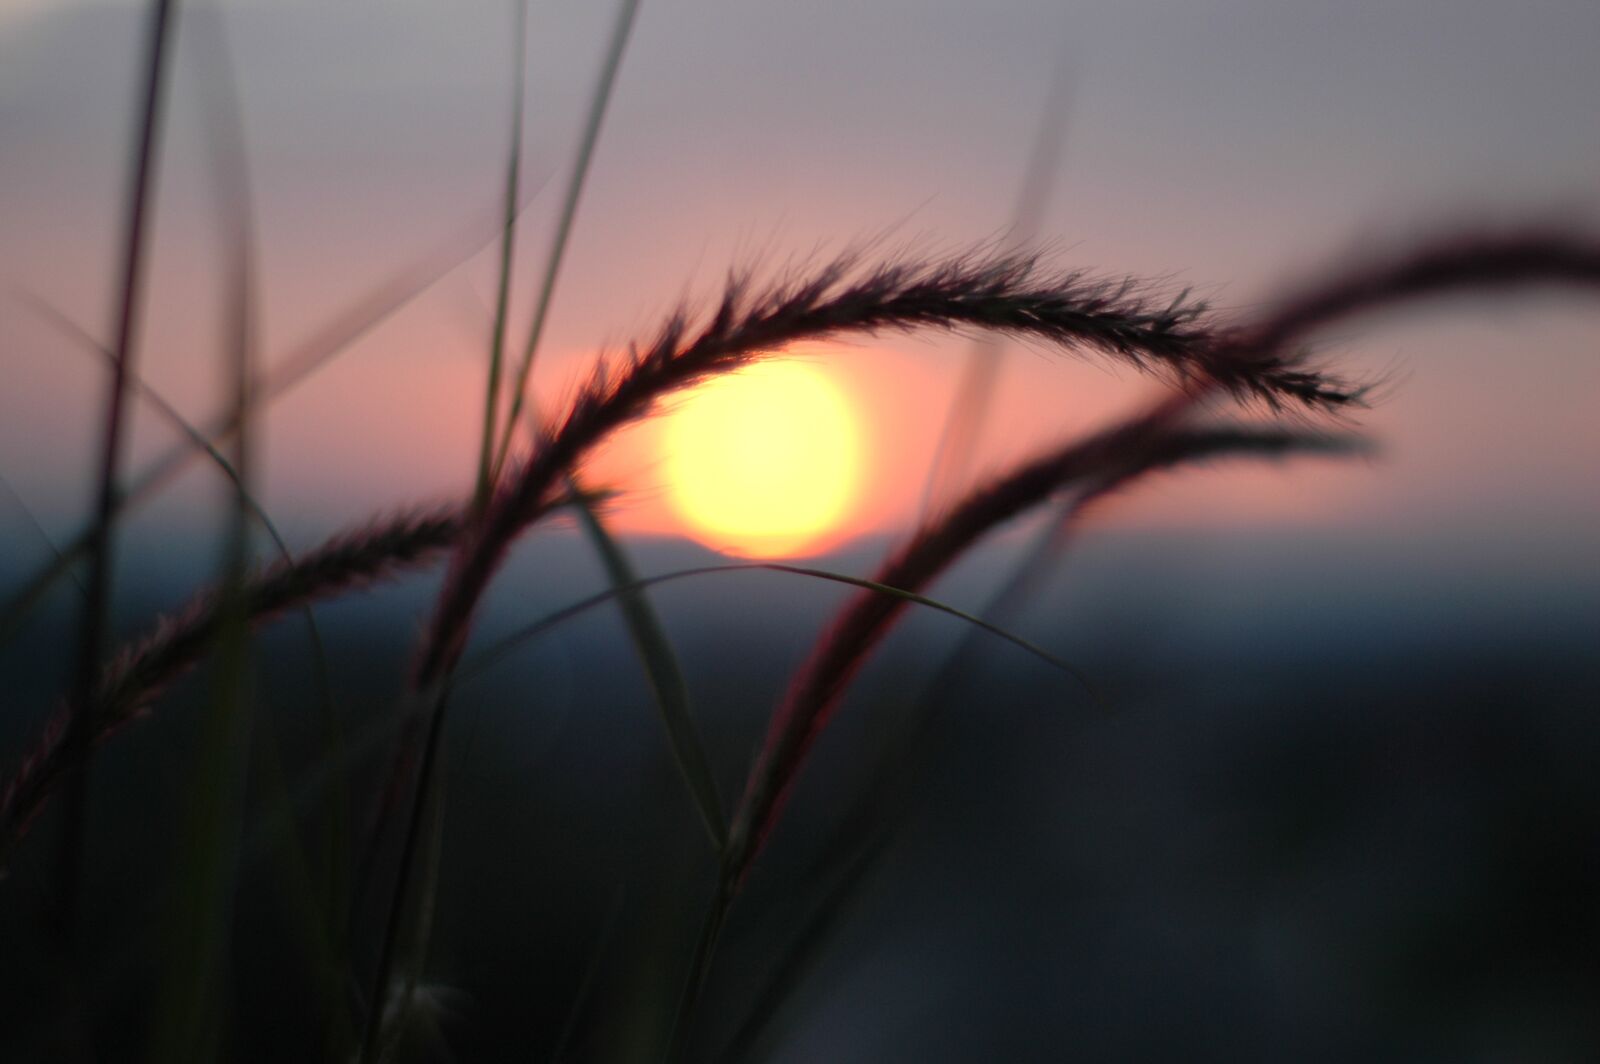 Nikon D70s sample photo. Sunset, grass, nature photography